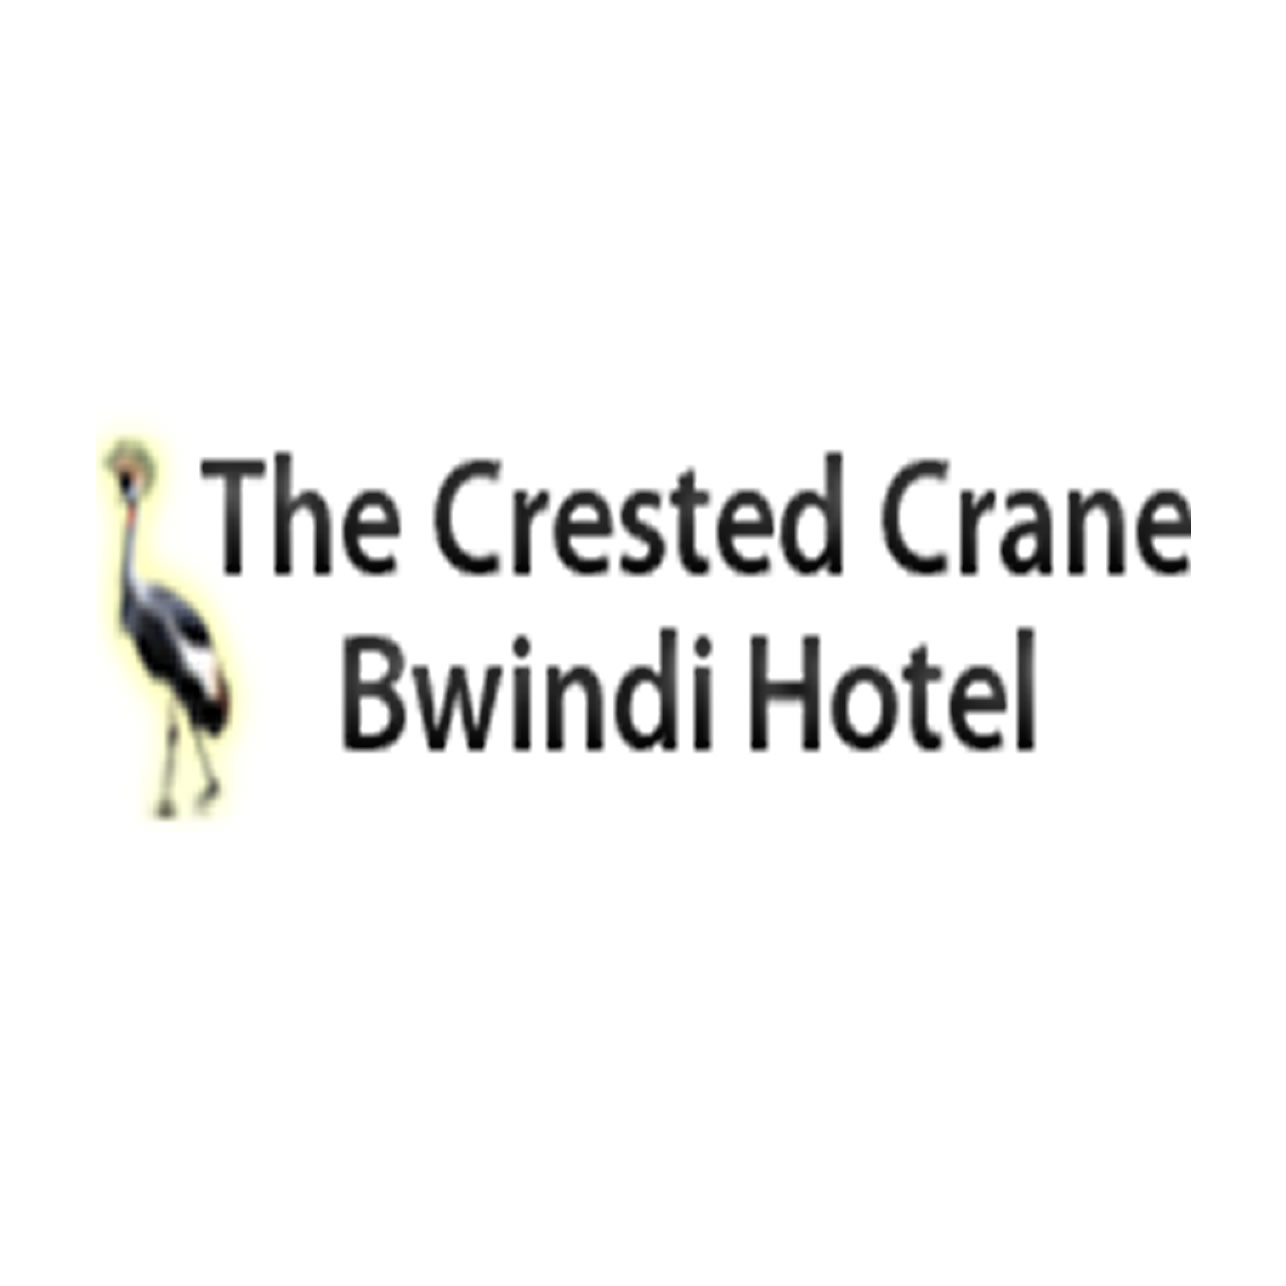 The Crested Crane Bwindi Hotel